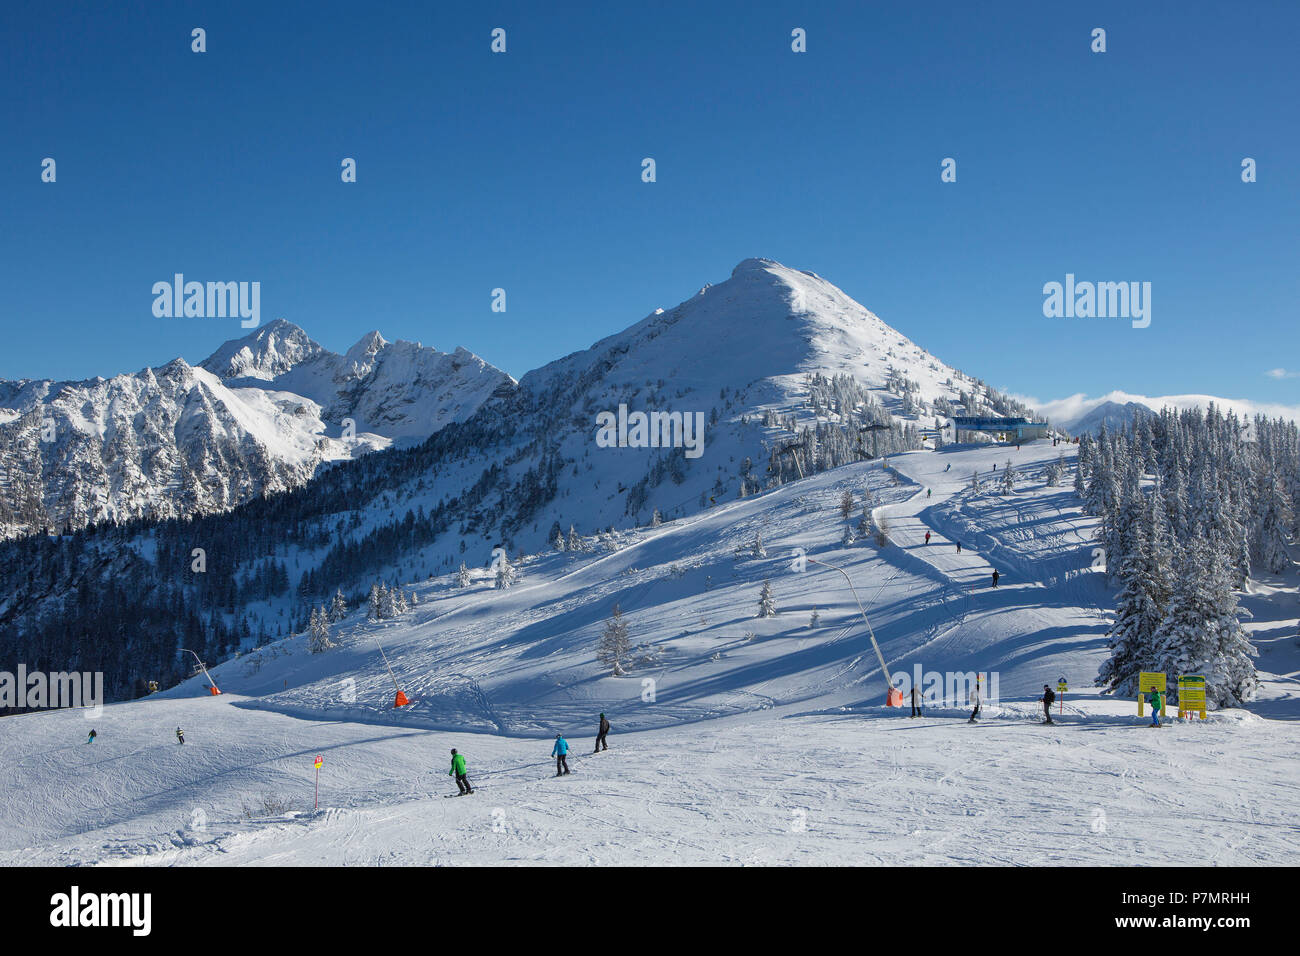 Austria, Styria, Liezen district, Schladming, Planai, Planai ski area, Stock Photo